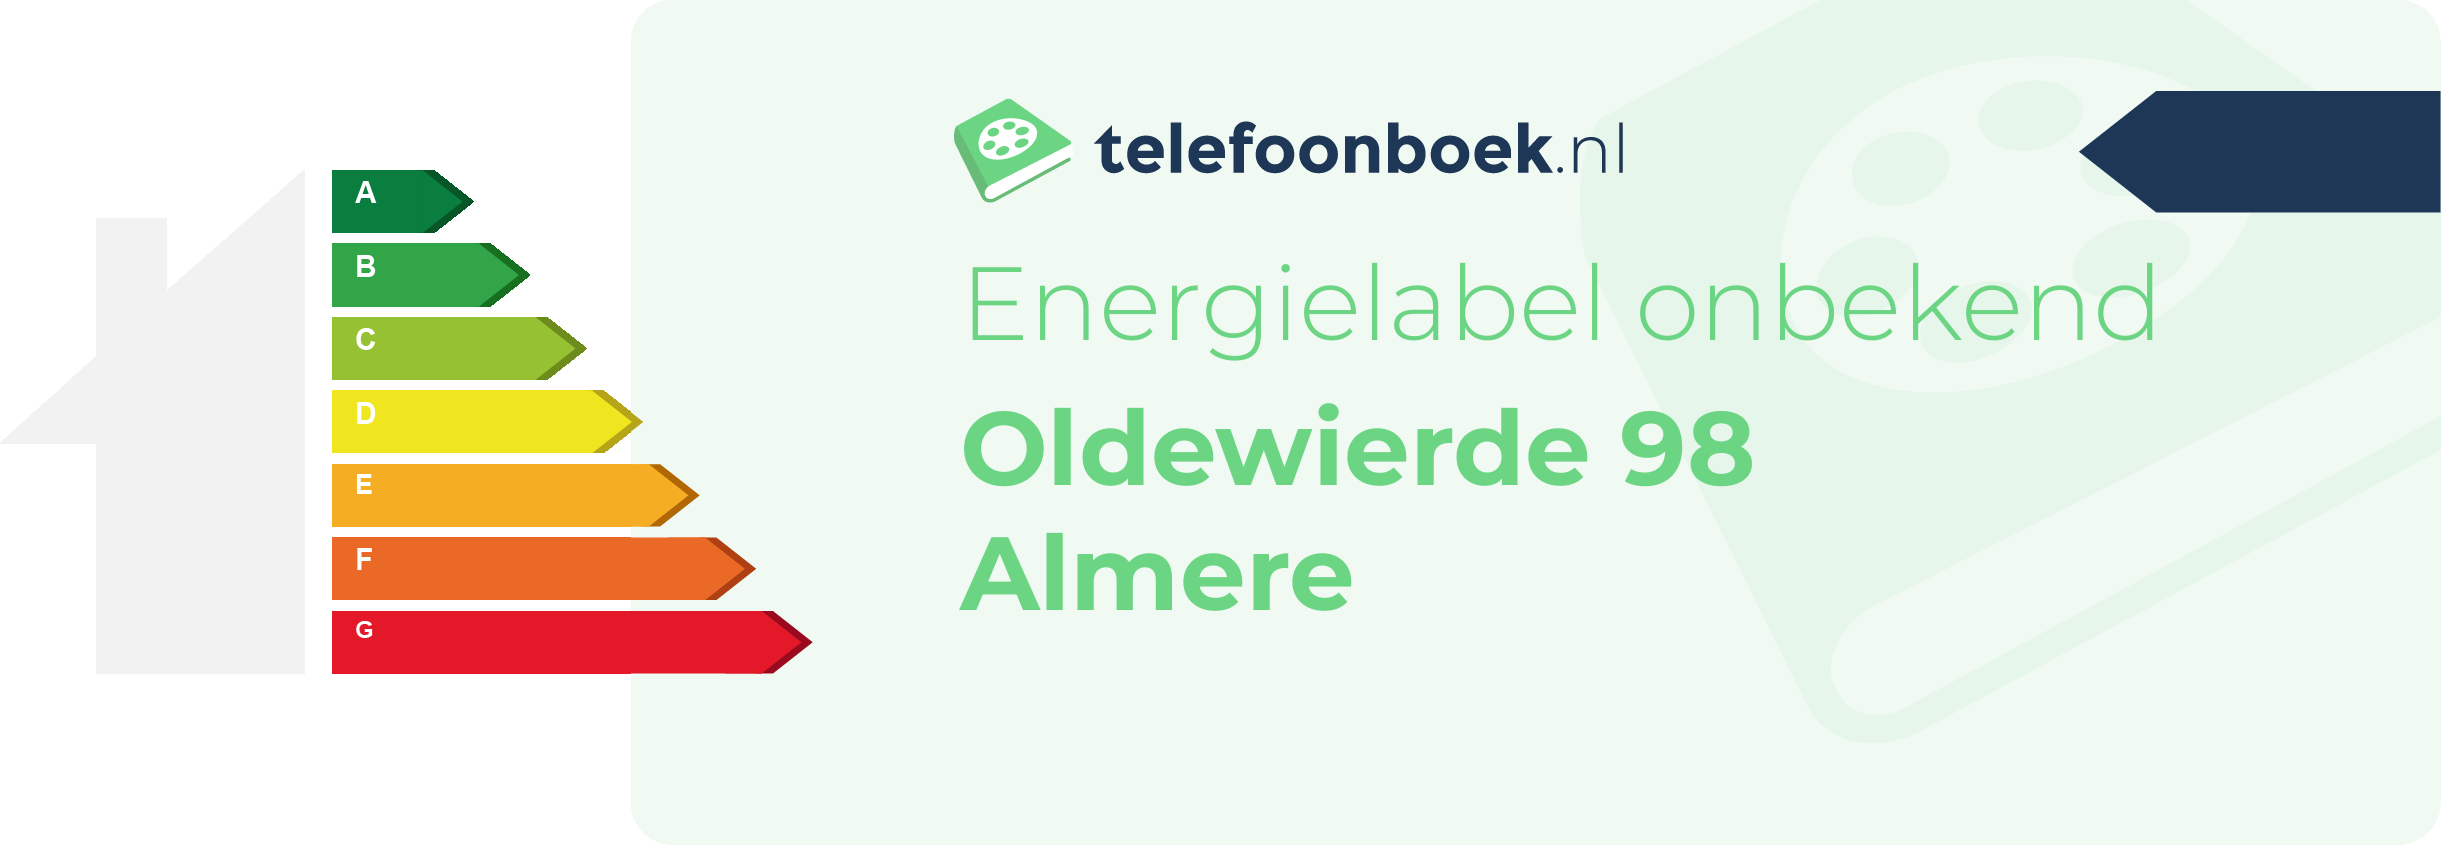 Energielabel Oldewierde 98 Almere